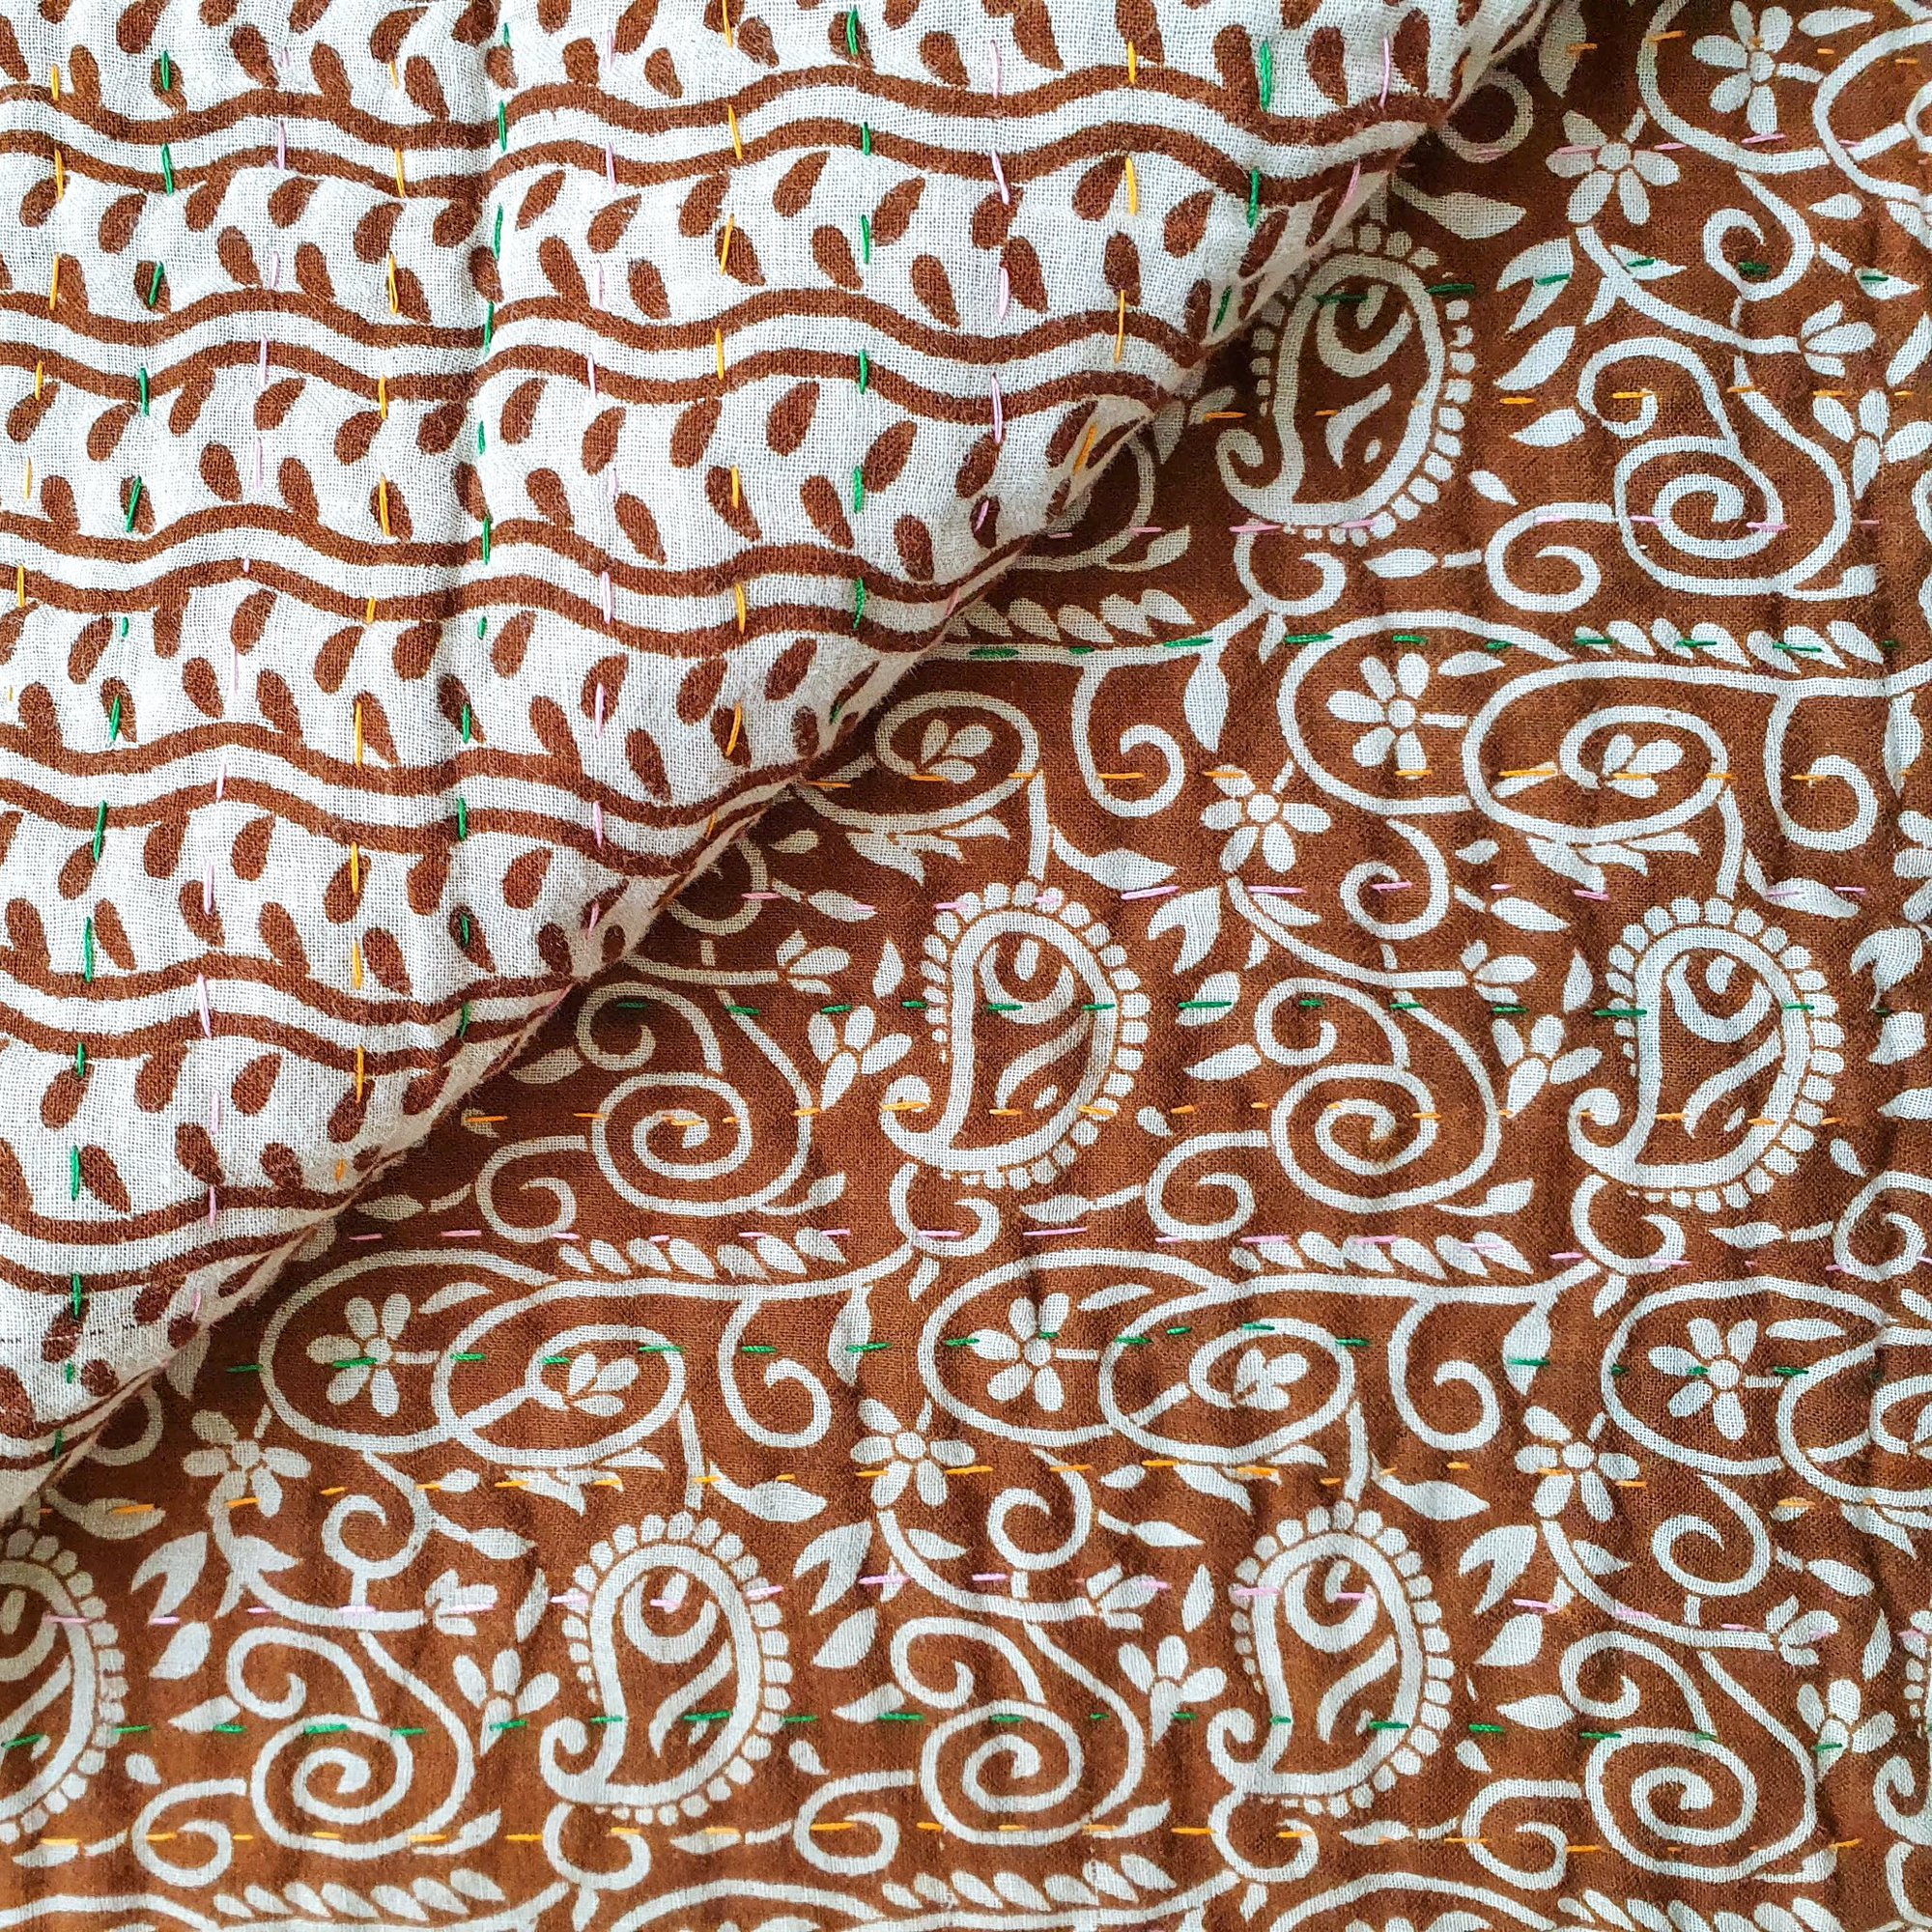 Mini Traditional Bengali Vintage Cotton Kantha Quilt (Copper & Beige Paisley)